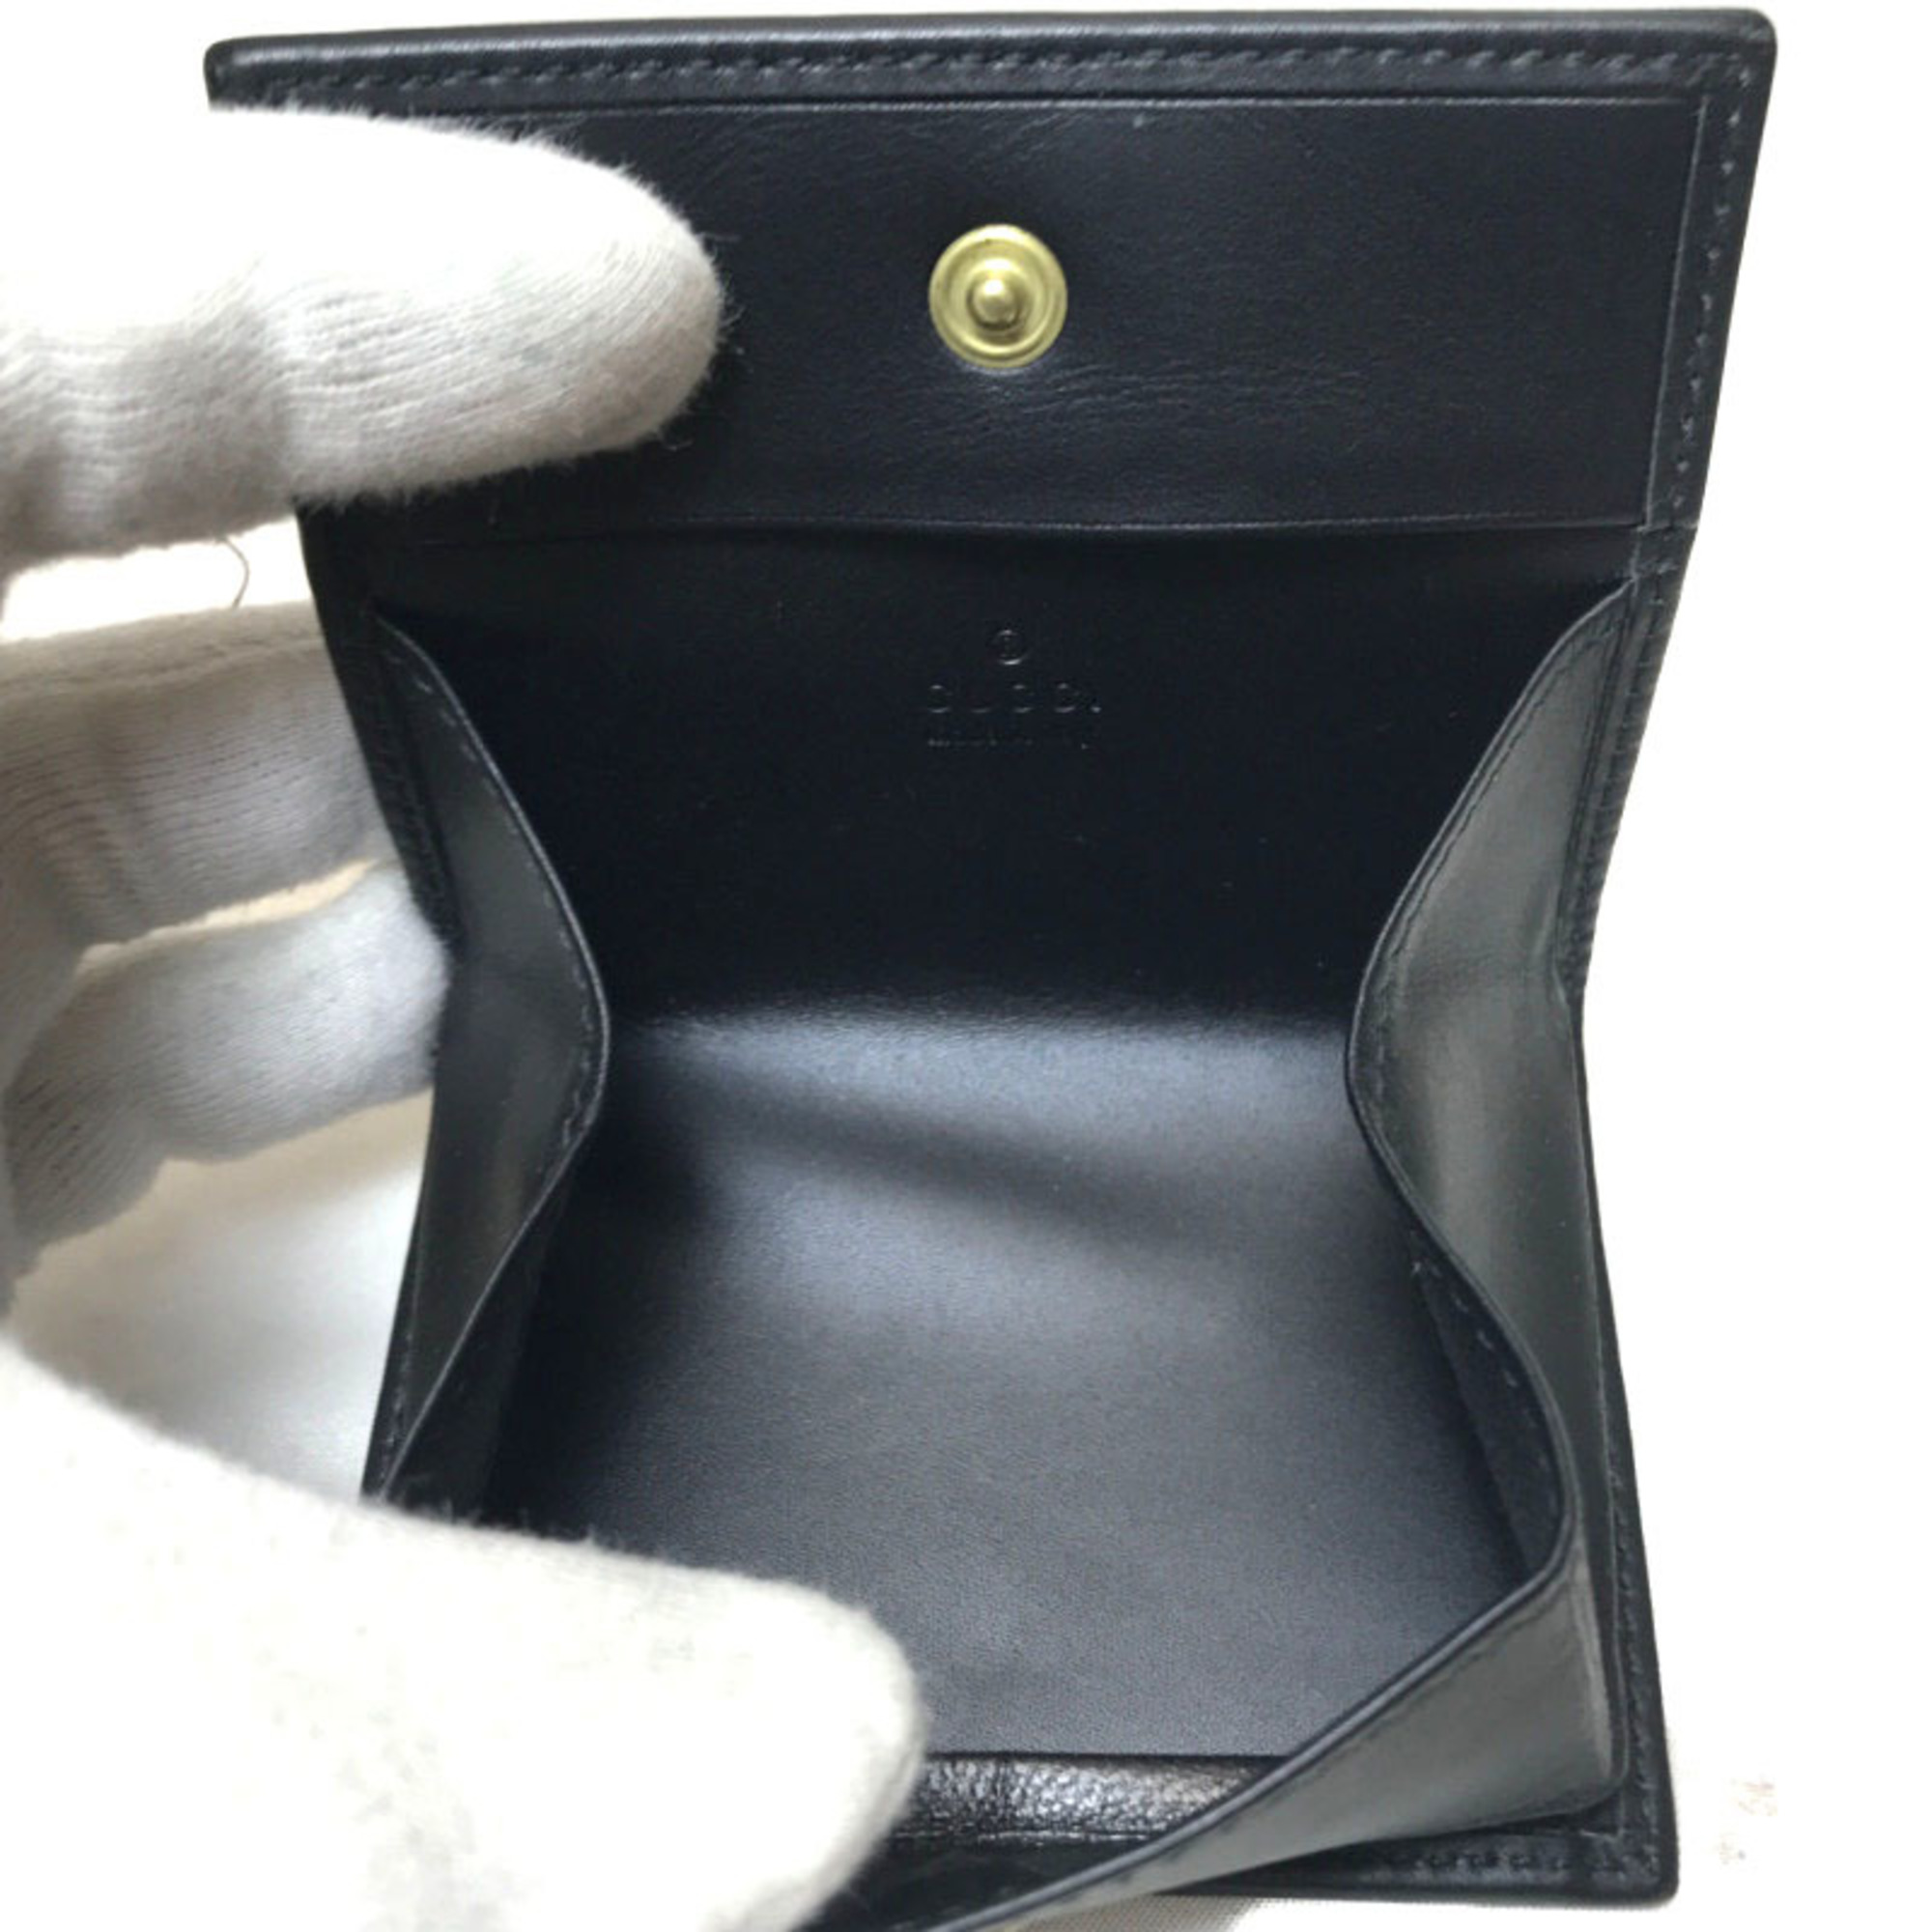 GUCCI Coin Case Purse Wallet Black Leather 2184 90695 Men's Women's